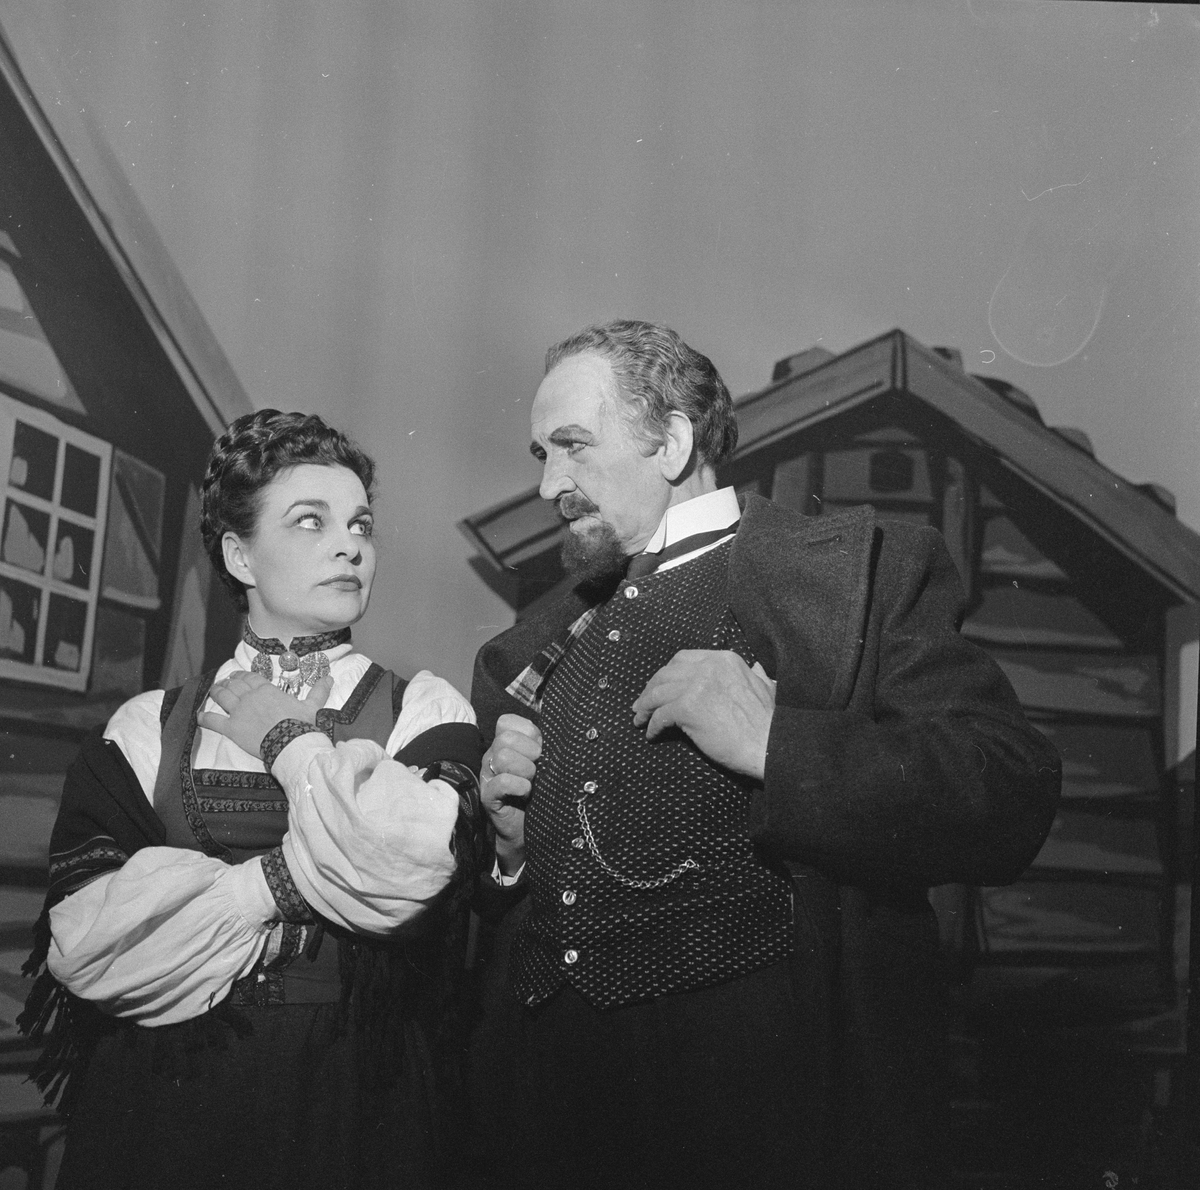 Oppsetning av "Dronning og rebell" på Det Norske Teatret. Skuespillere Eva Strøm Aastorp og Amund Rydland sammen på scenen. Fotografert 22. oktober 1956.